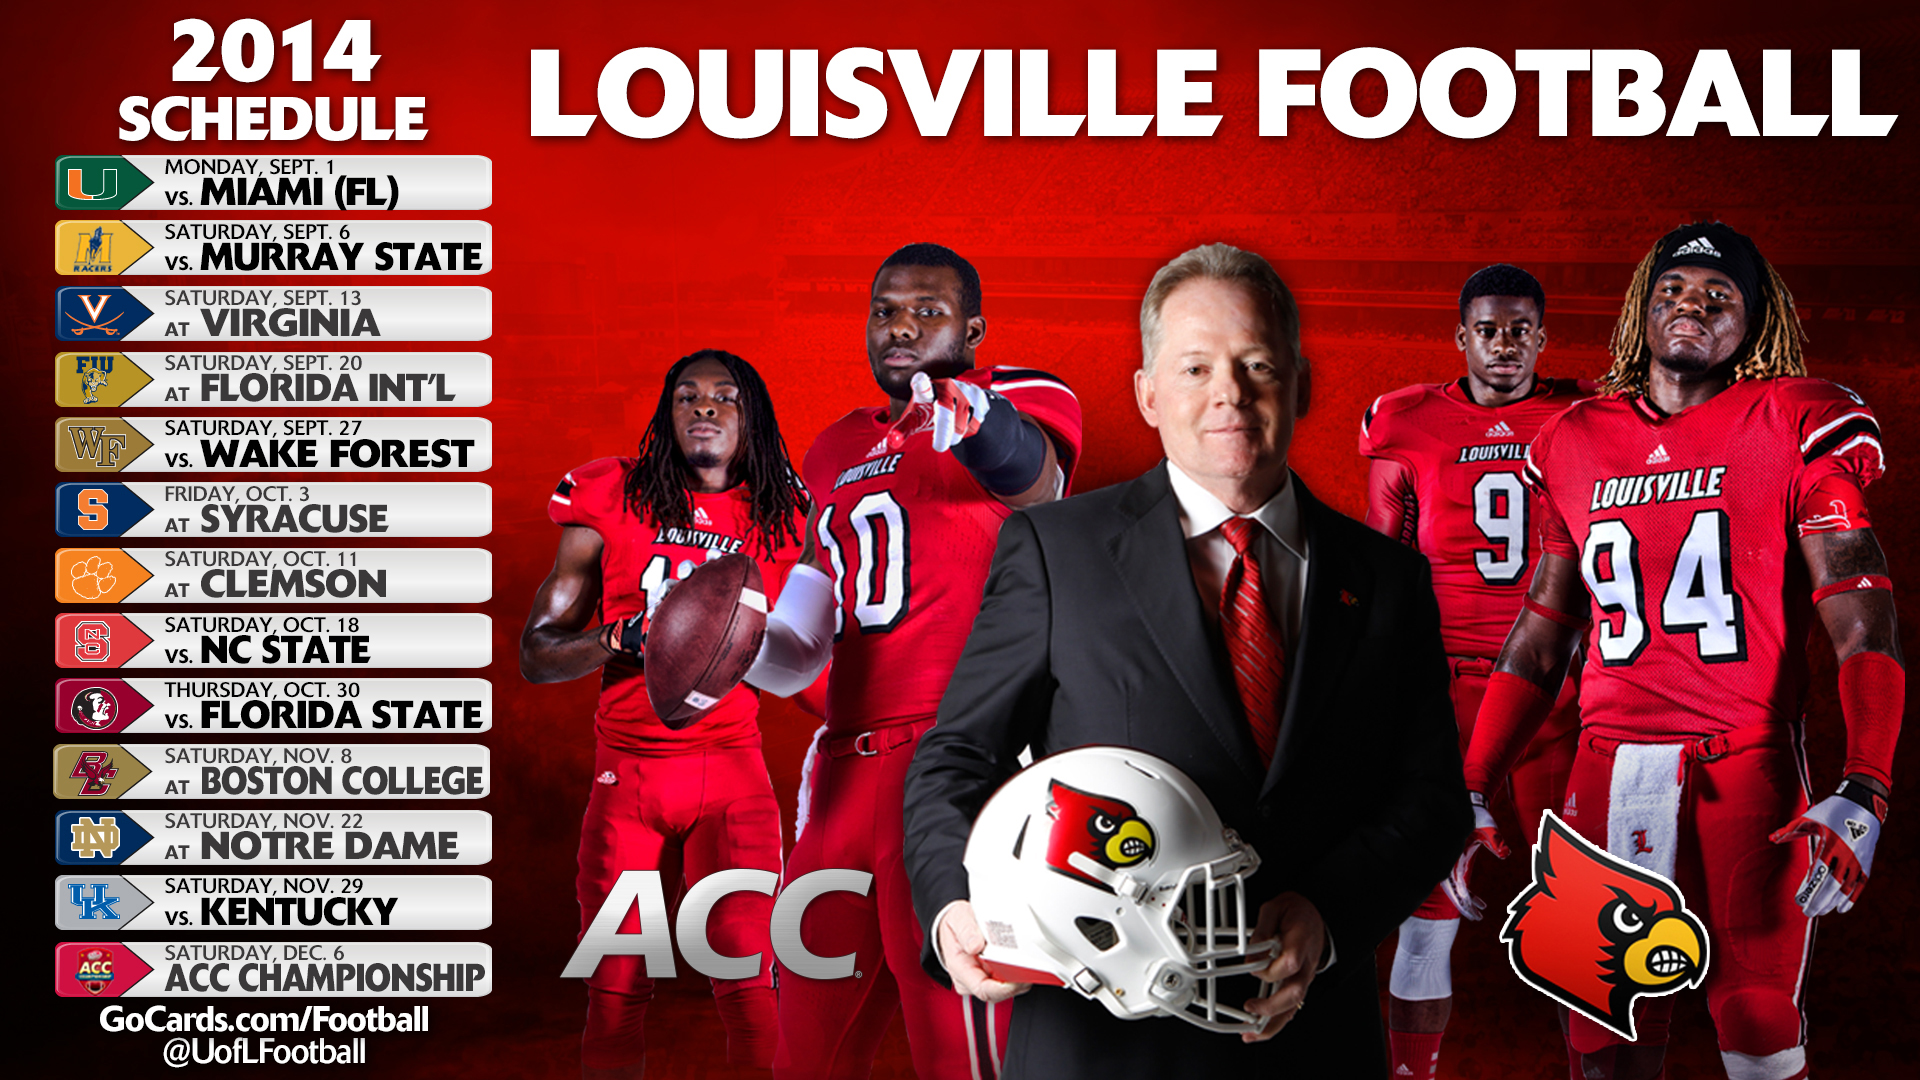 Louisville Cardinal Football Wallpaper